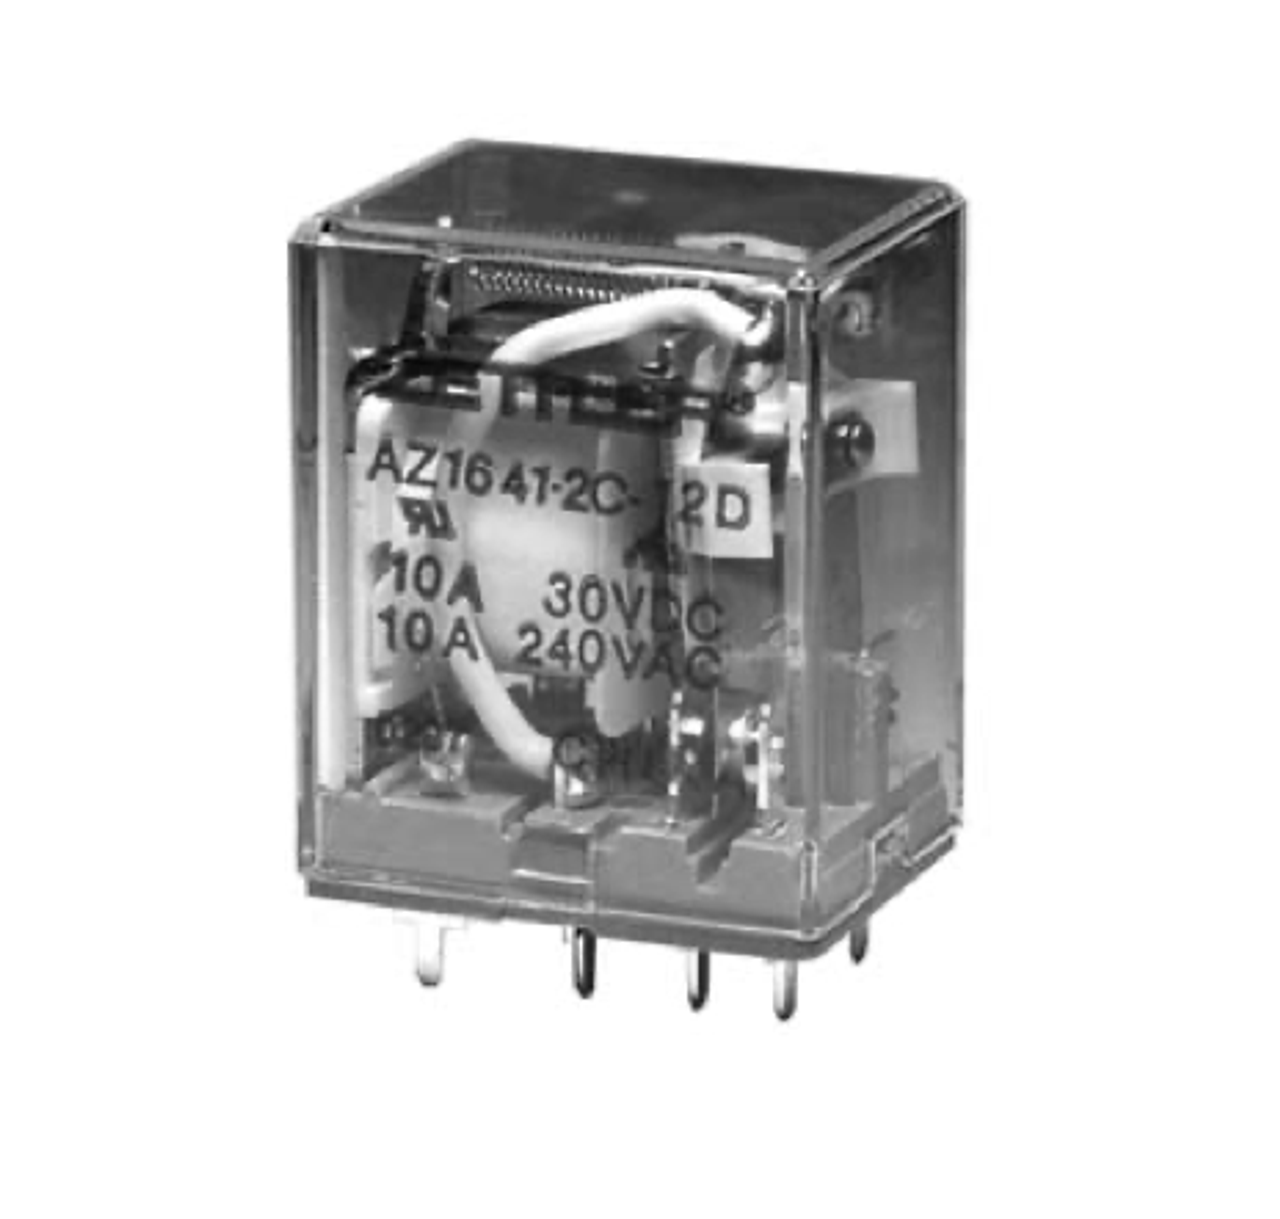 American Zettler AZ1641-3C-48A Power Relay